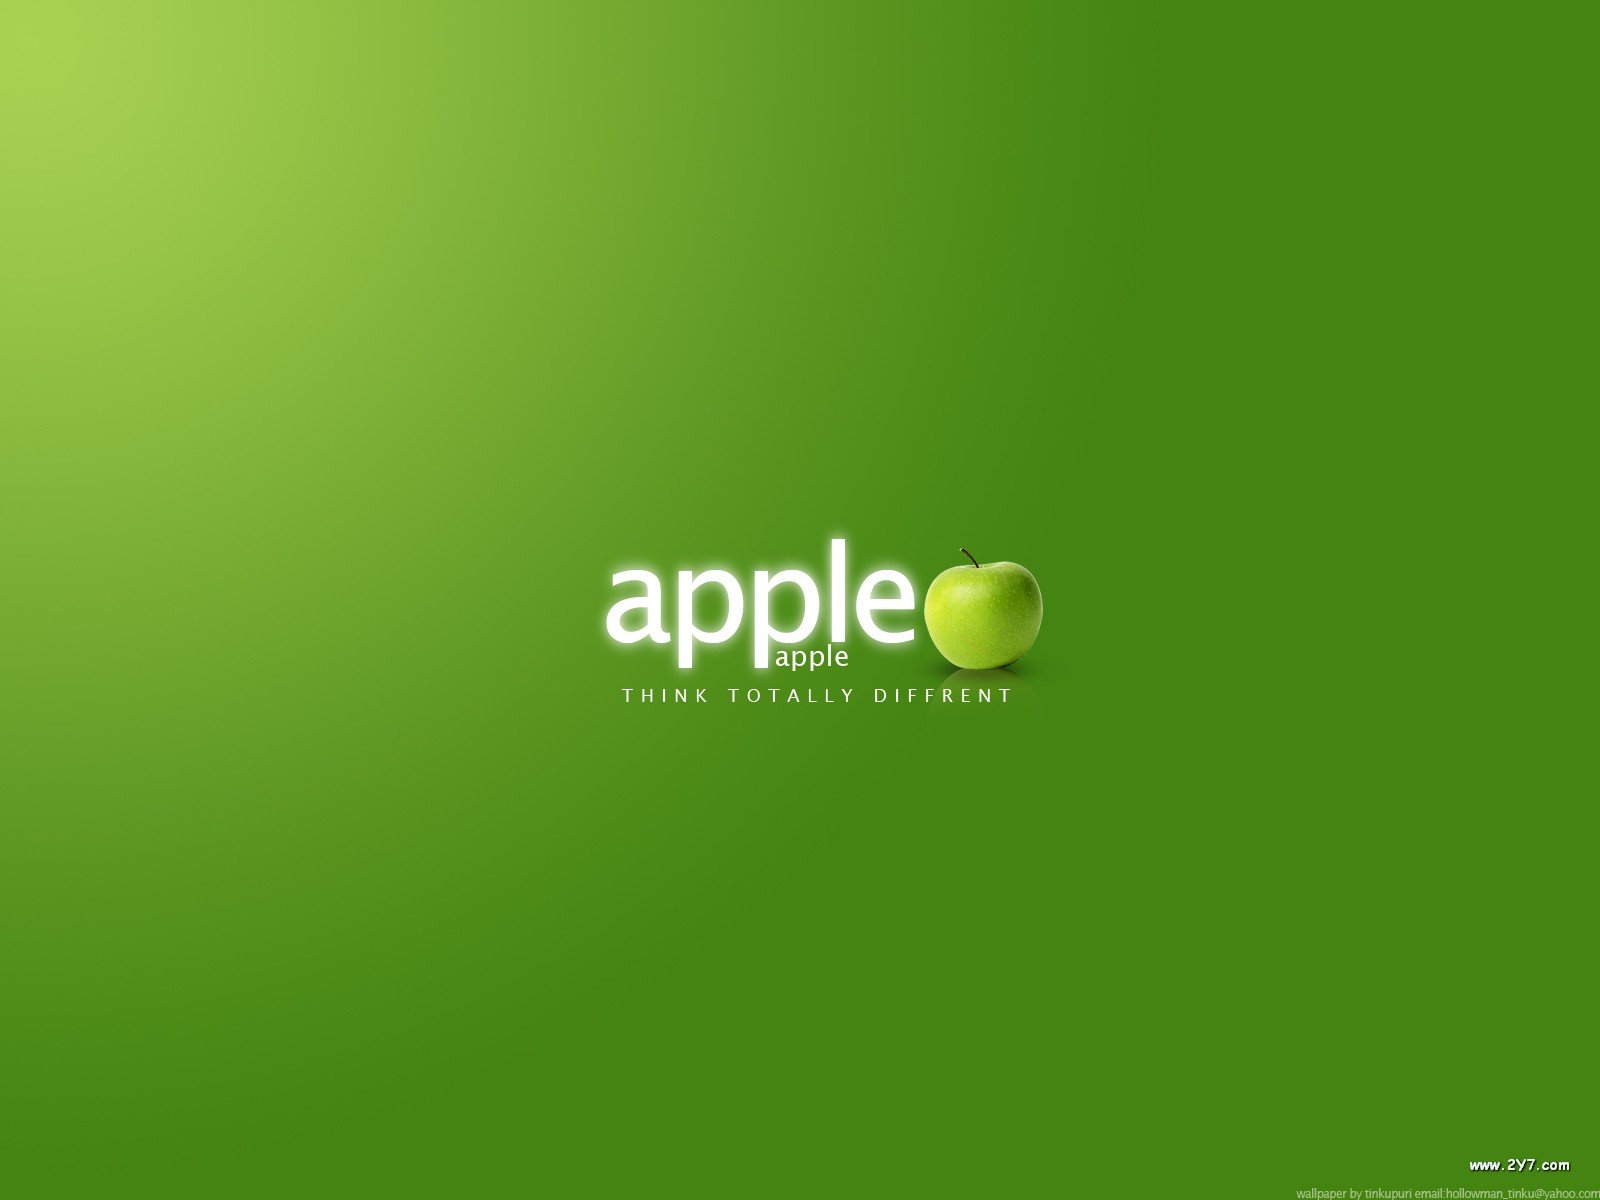 apple wallpaper hd 1080p Apple wide wallpapers